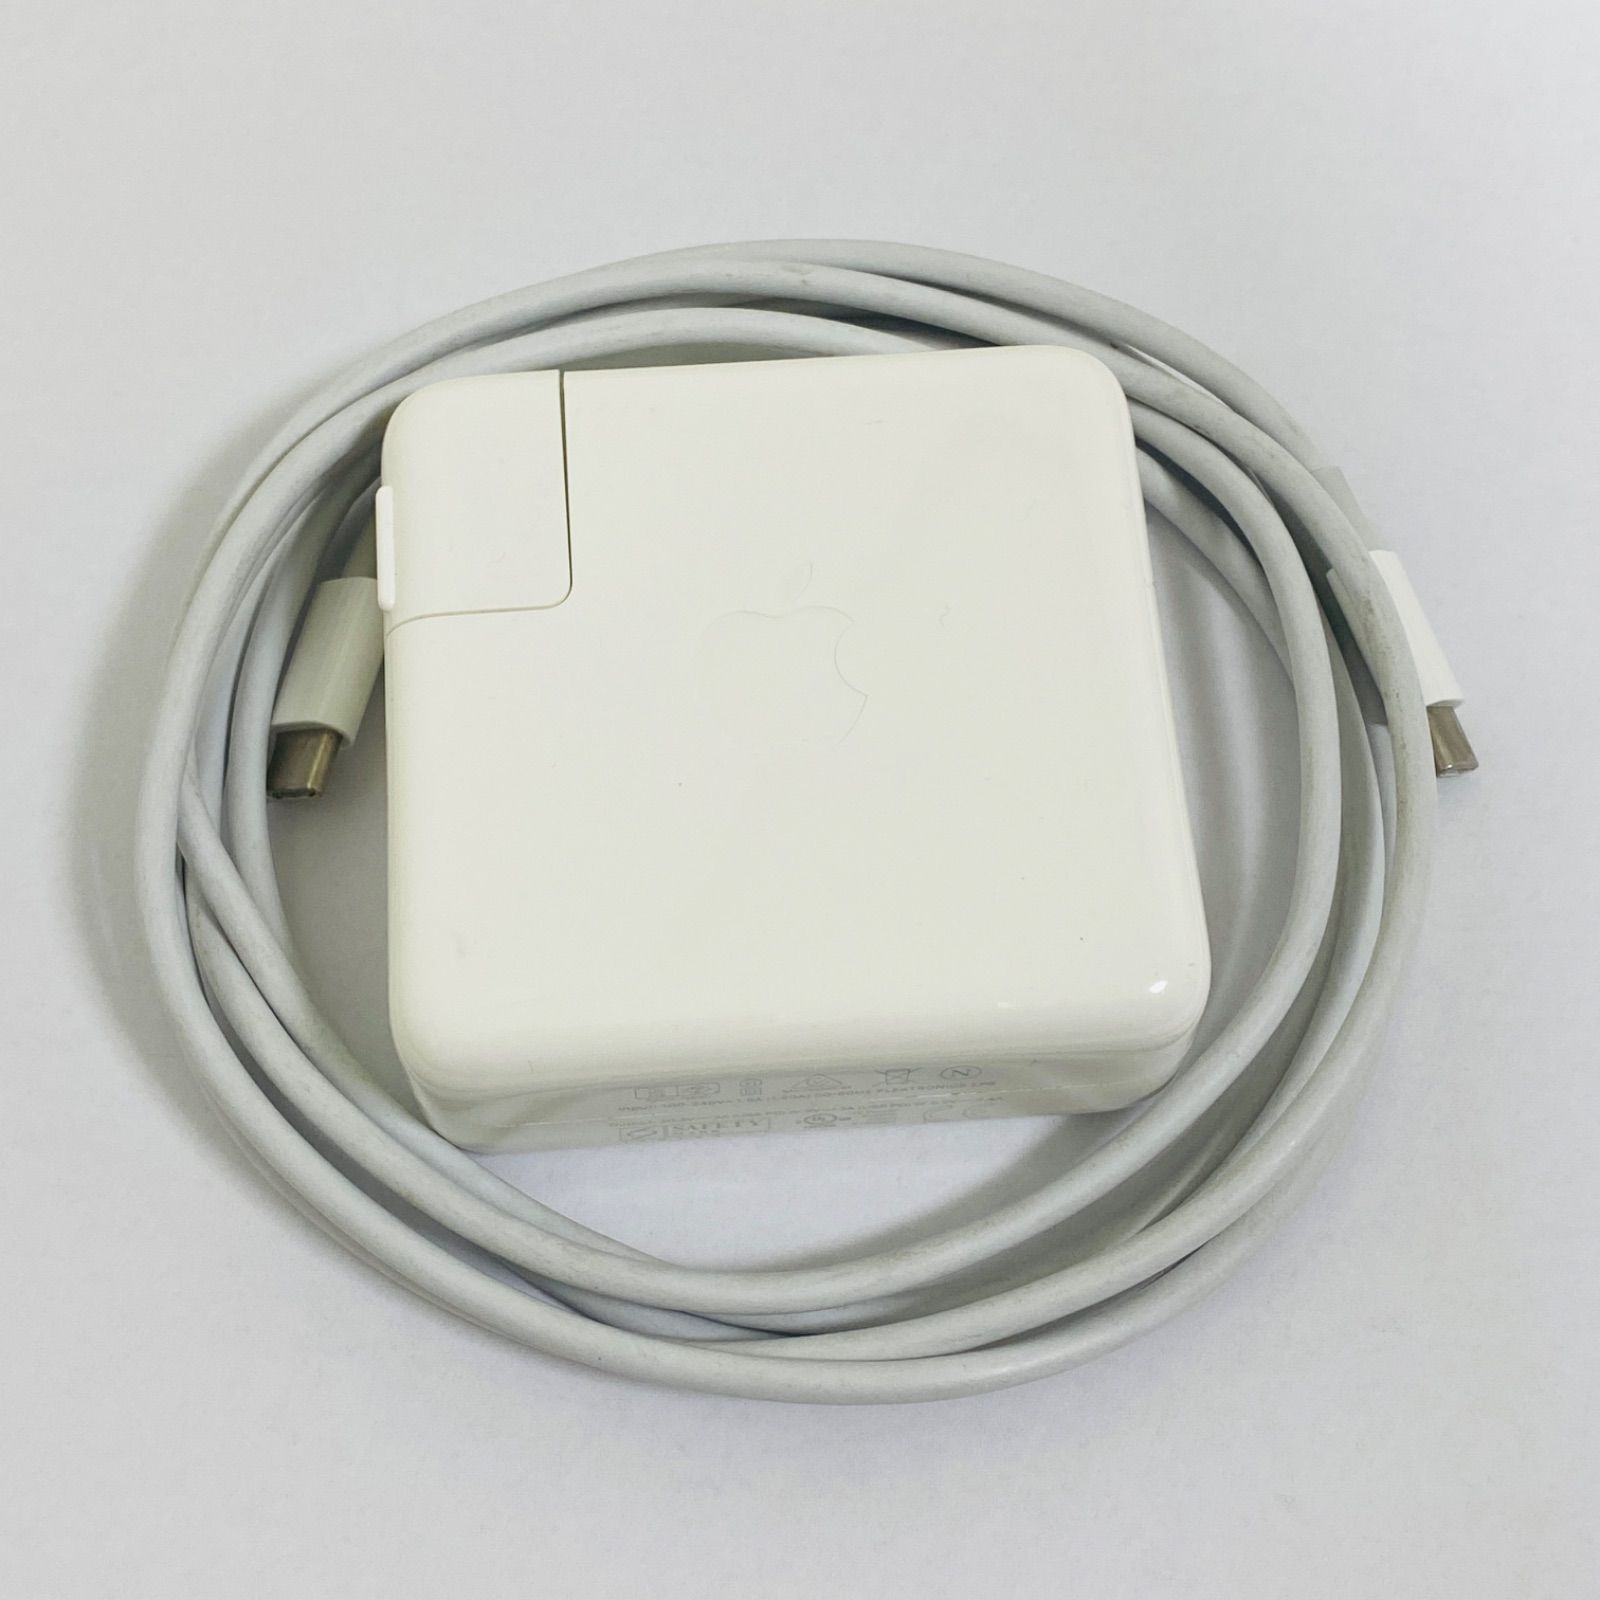 ブランド品 Apple 20W USB-C電源アダプタ 新品未使用 sushitai.com.mx